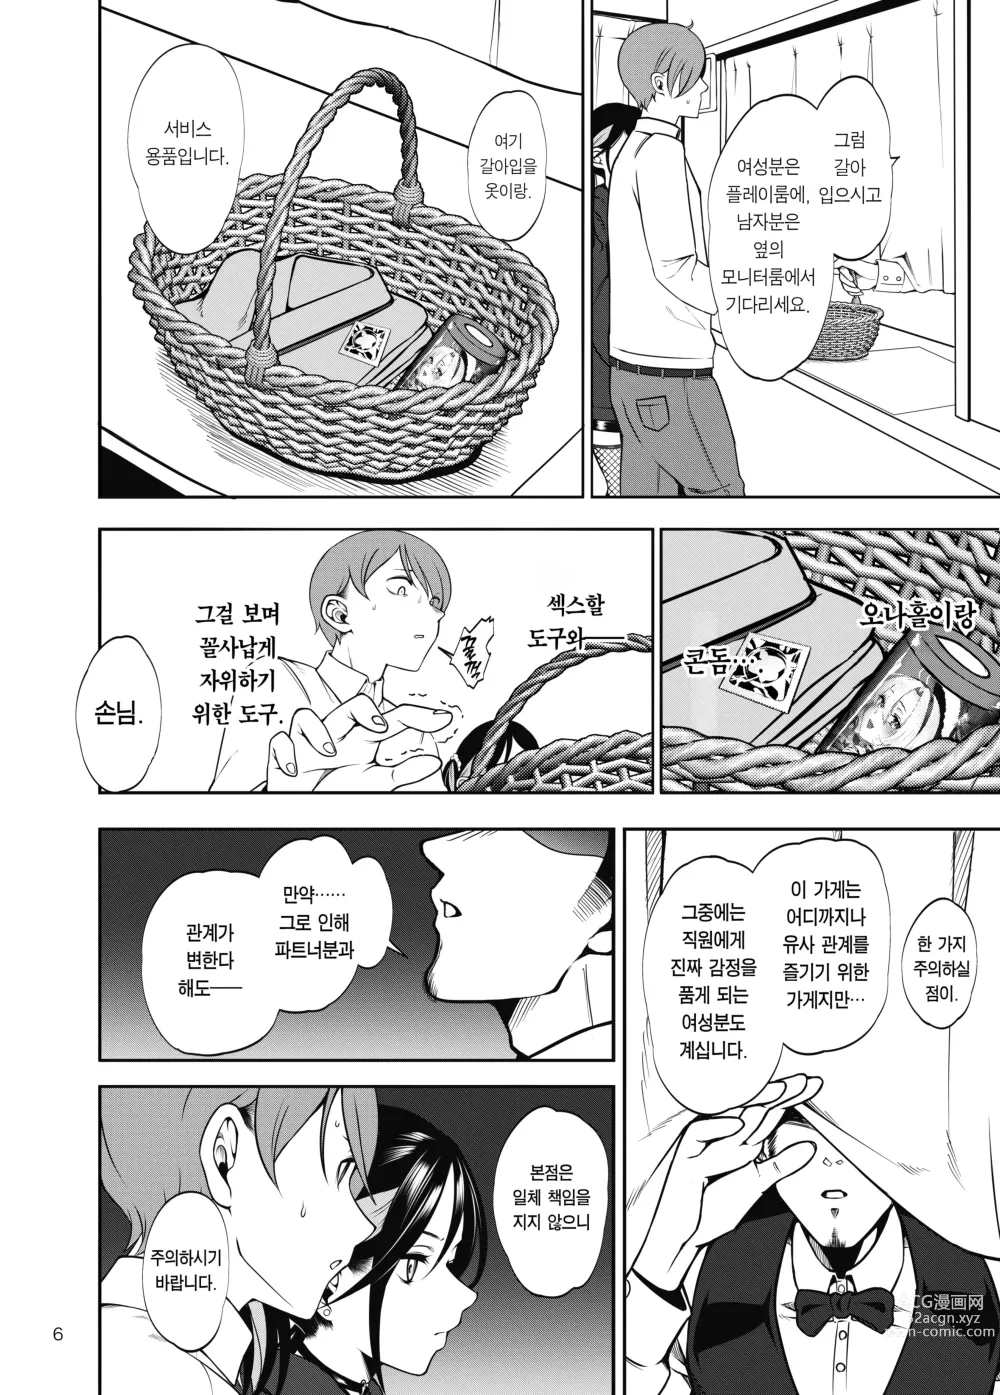 Page 7 of doujinshi 여친을 네토라세 풍속 같은 곳에 데려가는 게 아니었는데 (decensored)